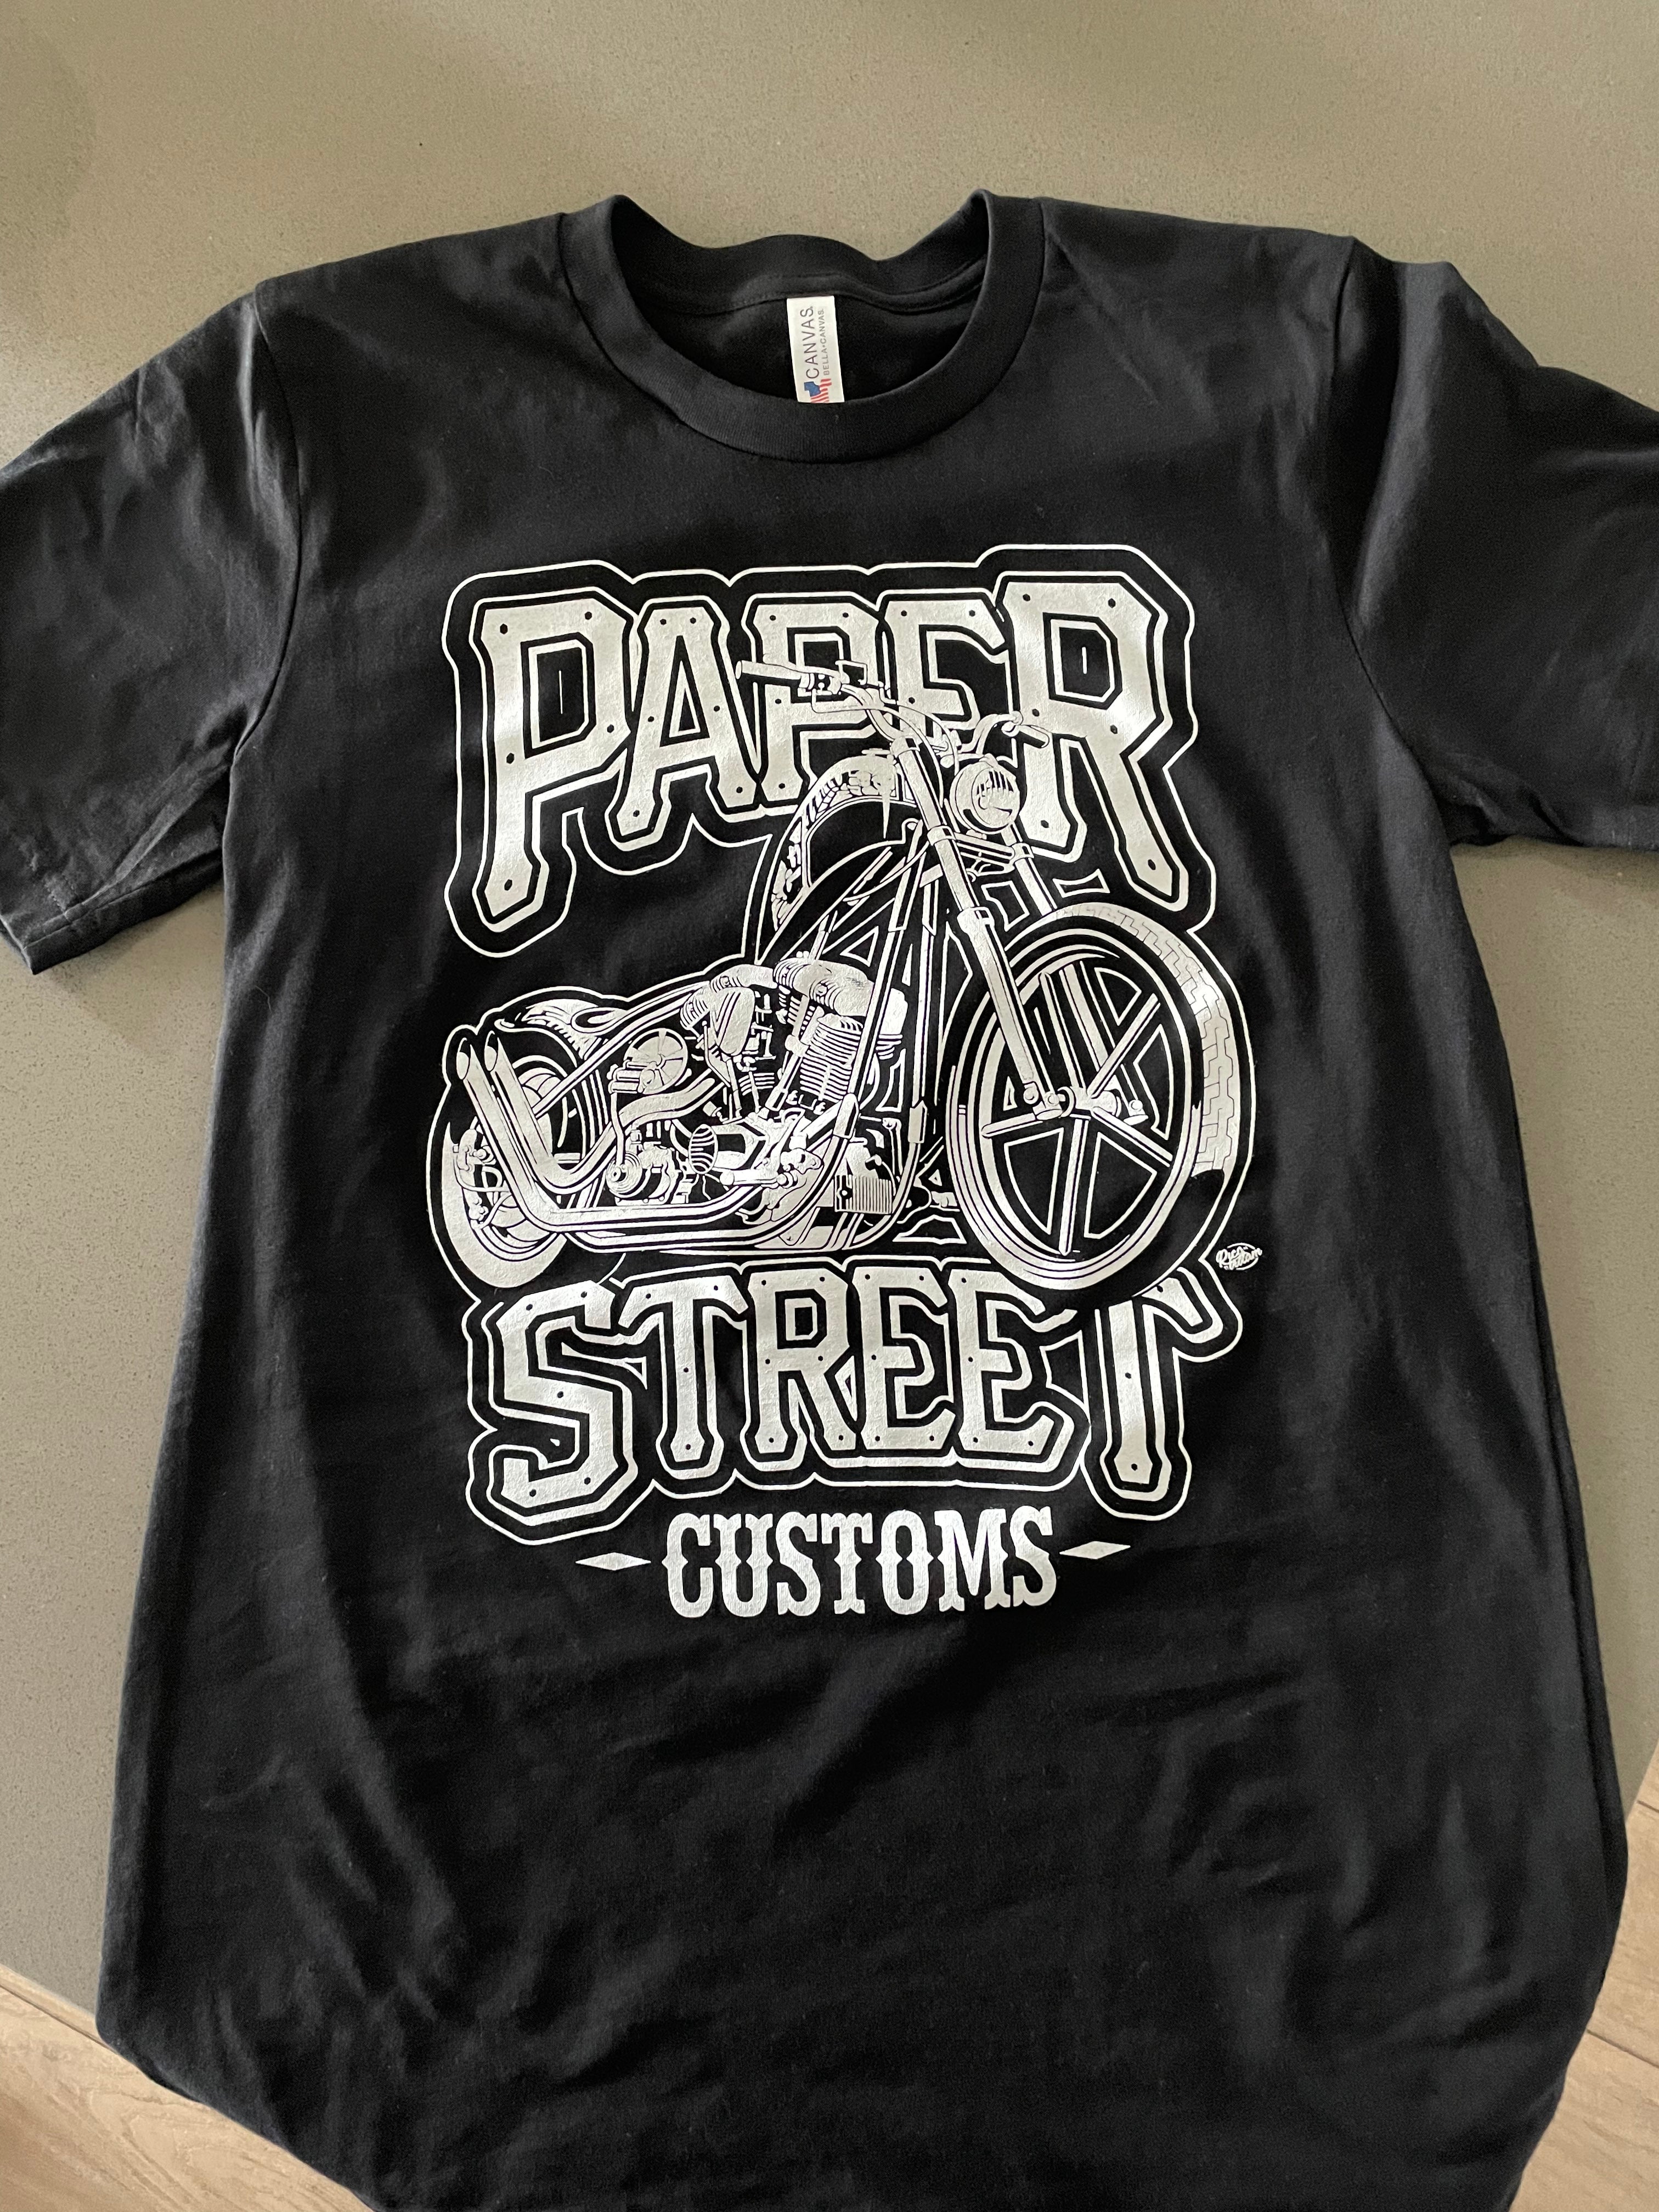 Paper Street Customs Shirt